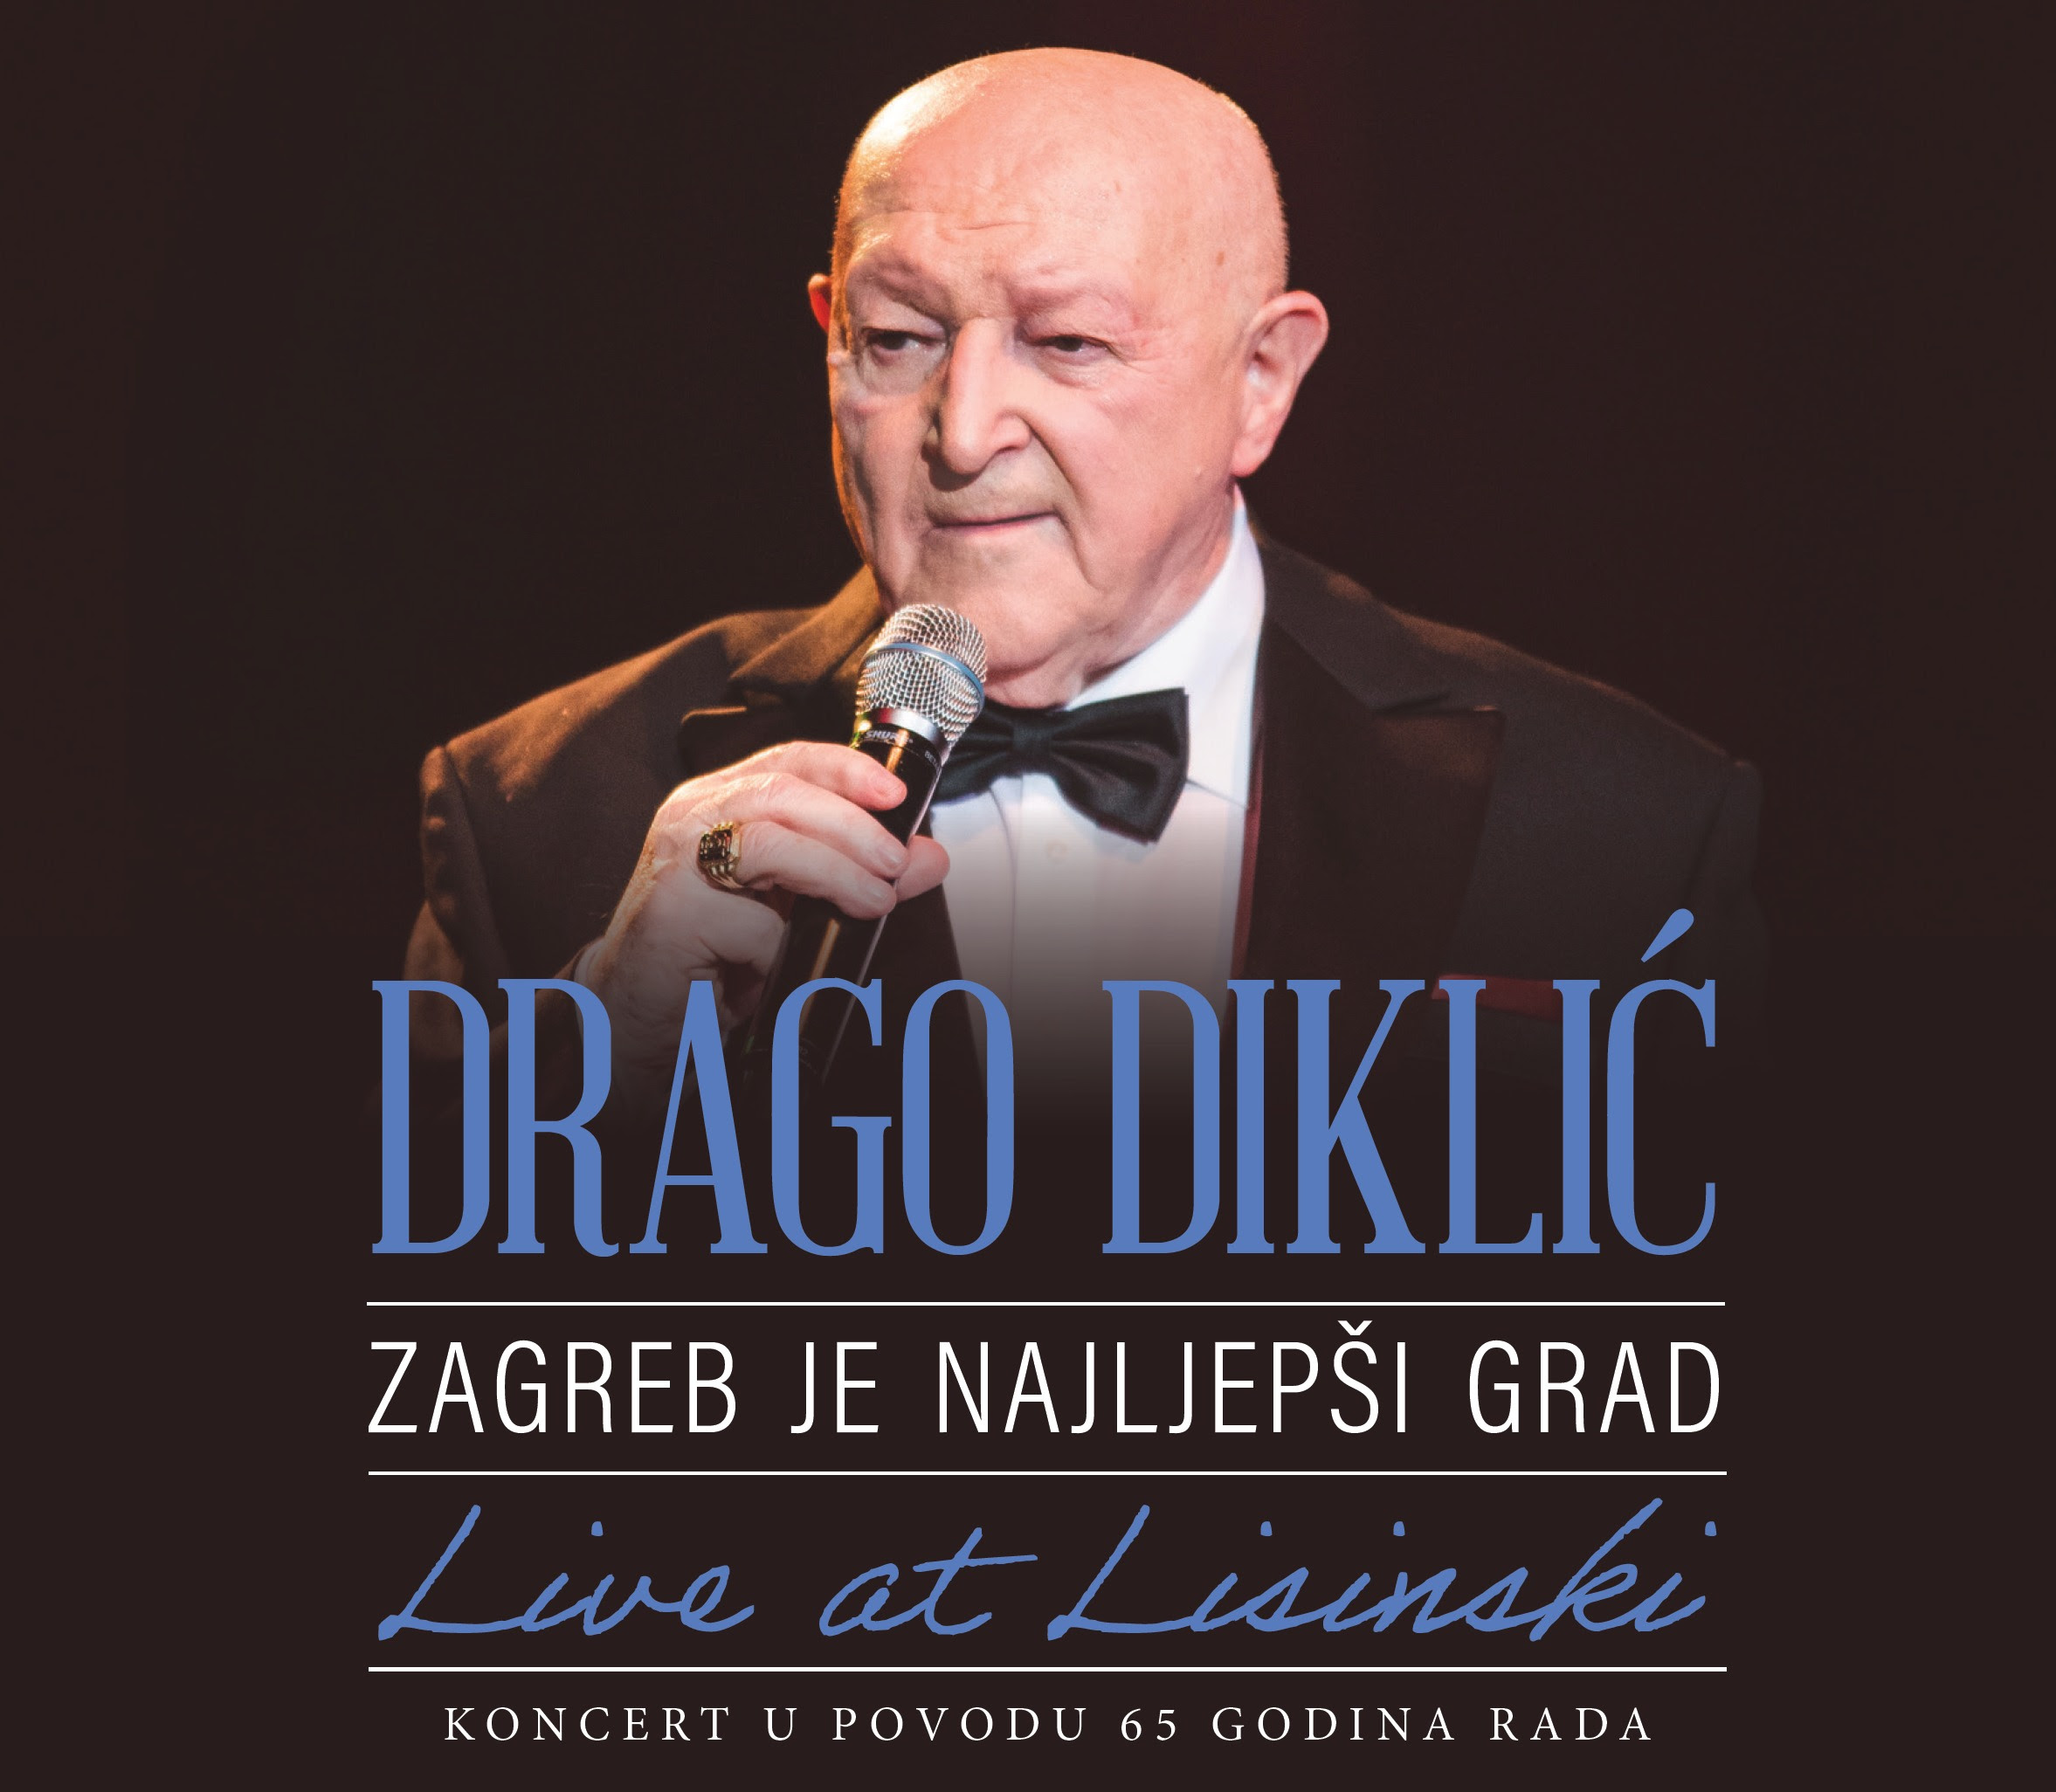 Koncert u Lisinskom, kojim je Drago Diklić proslavio 65 godina karijere, objavljen na dvostrukom CD-u